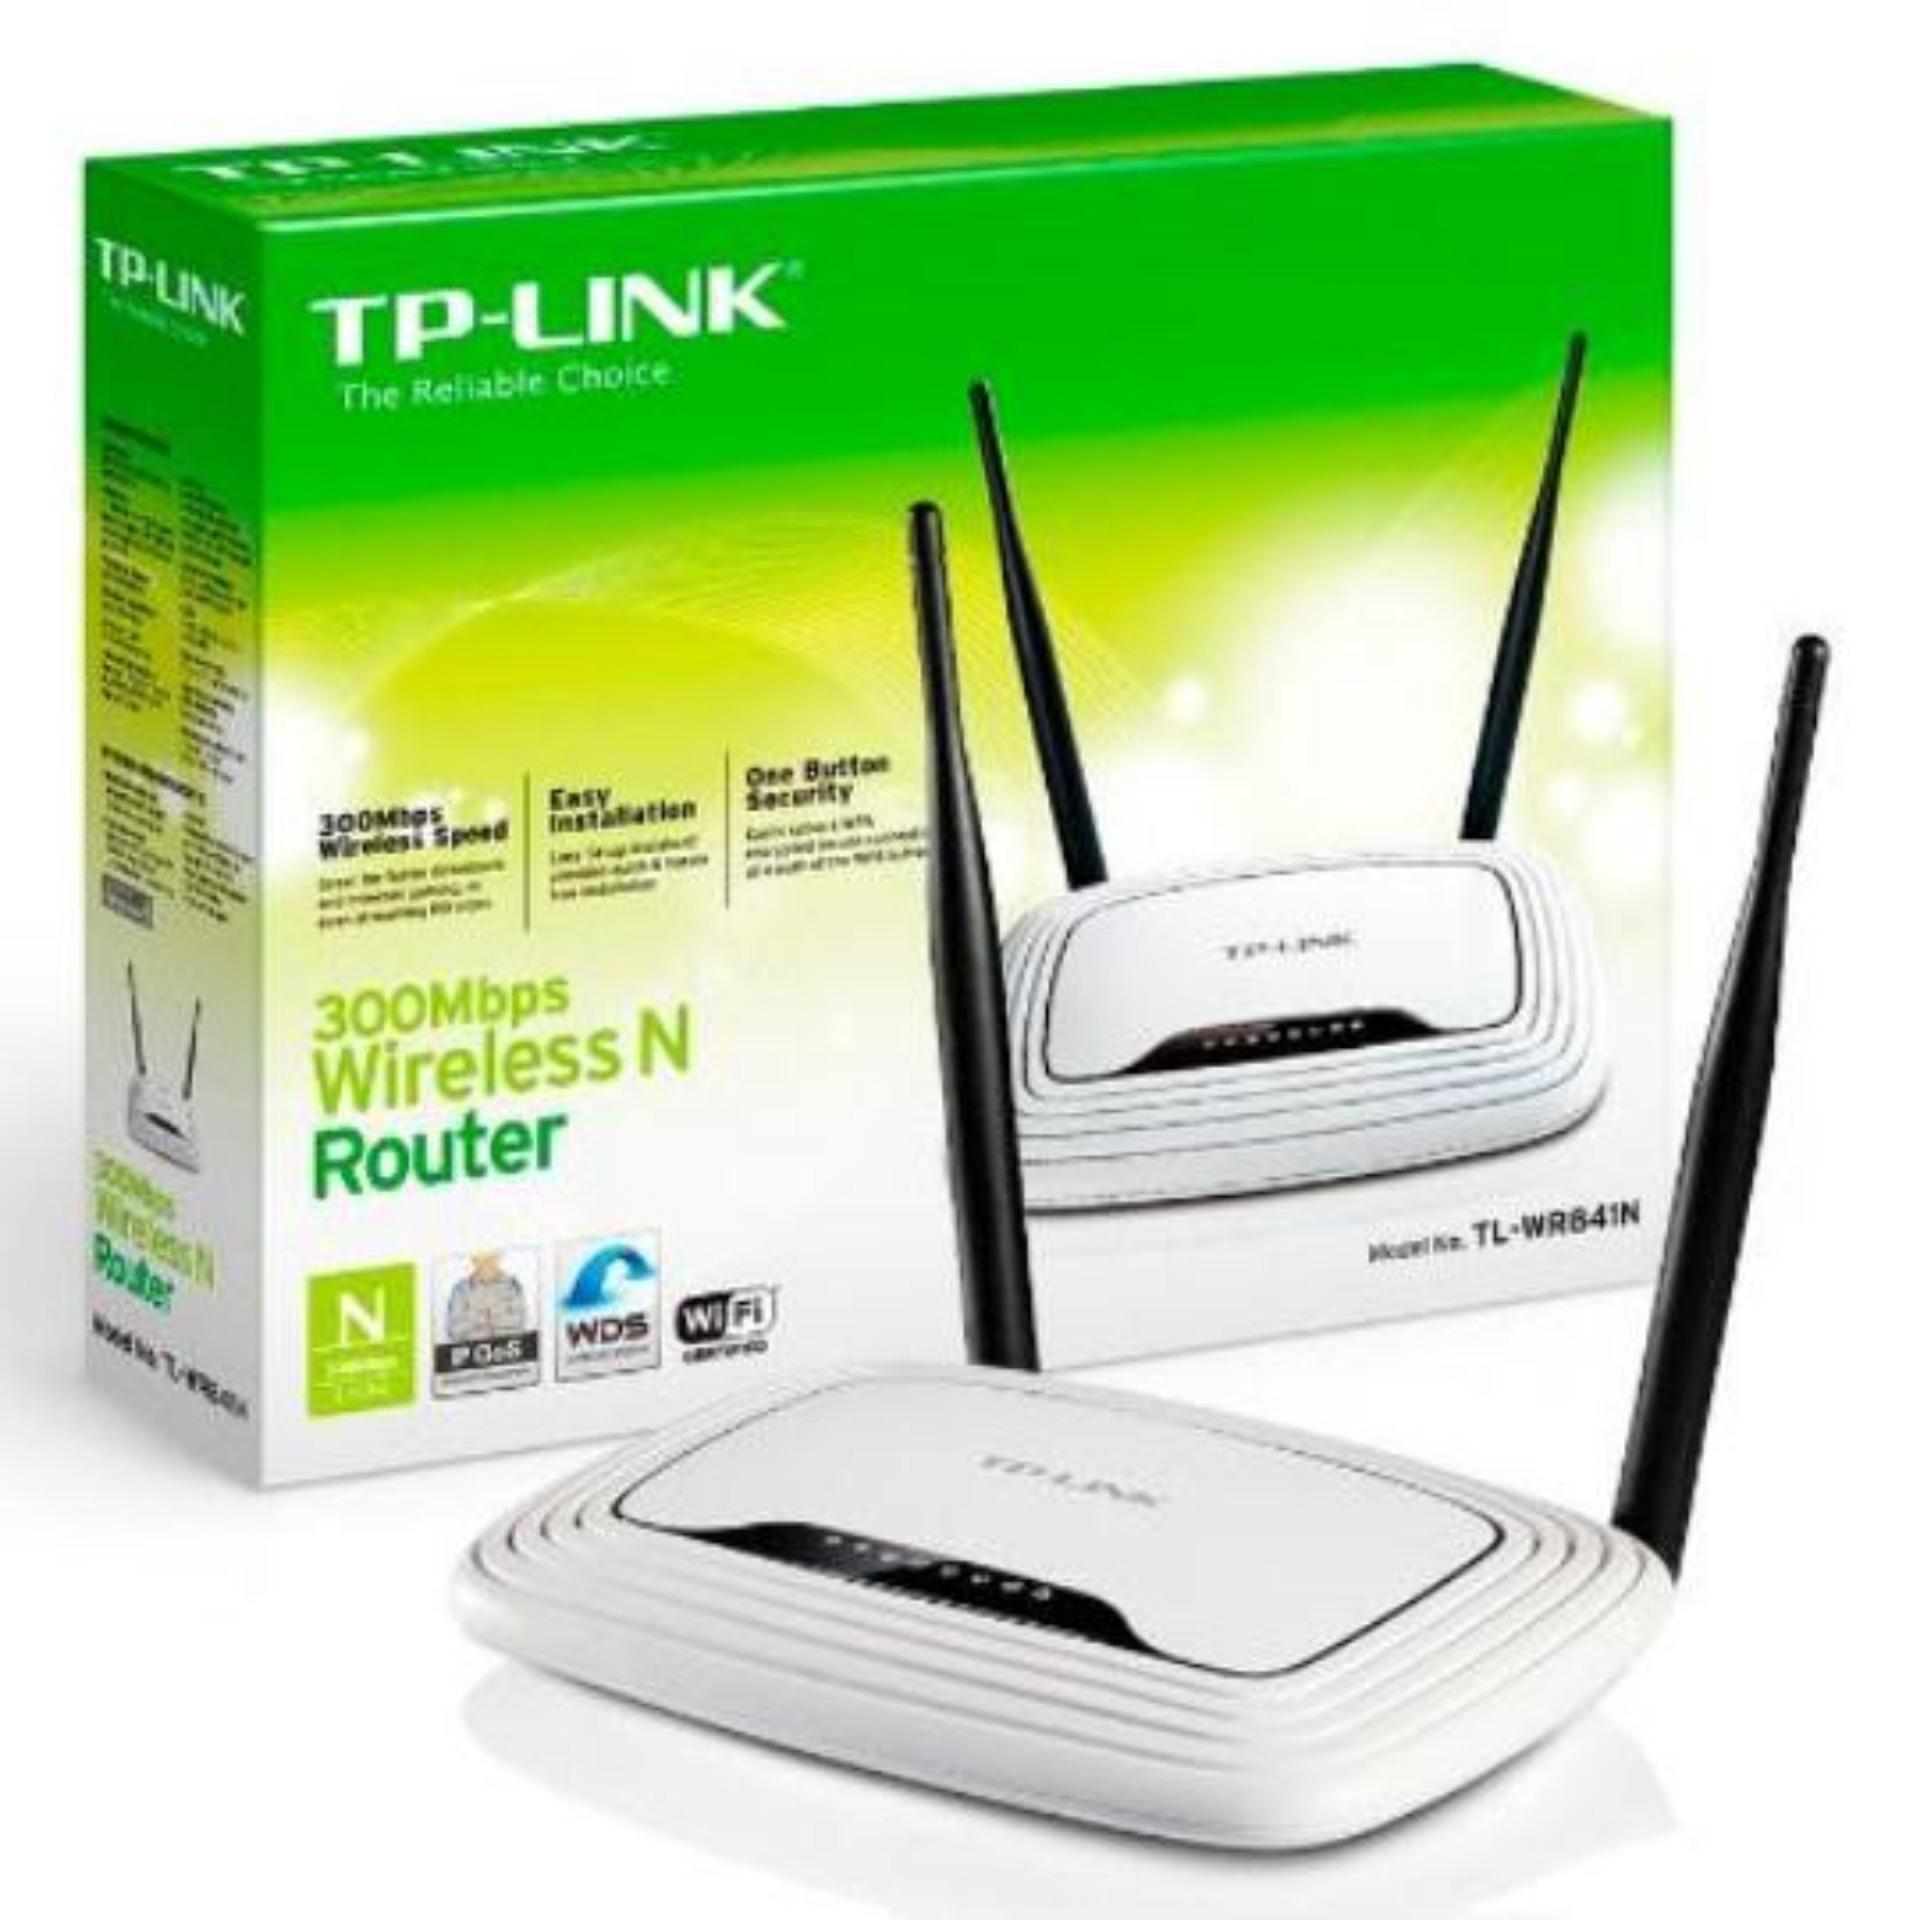 Router Wi-Fi chuẩn N tốc độ 300Mbps TP-Link TL-WR841N (Trắng)